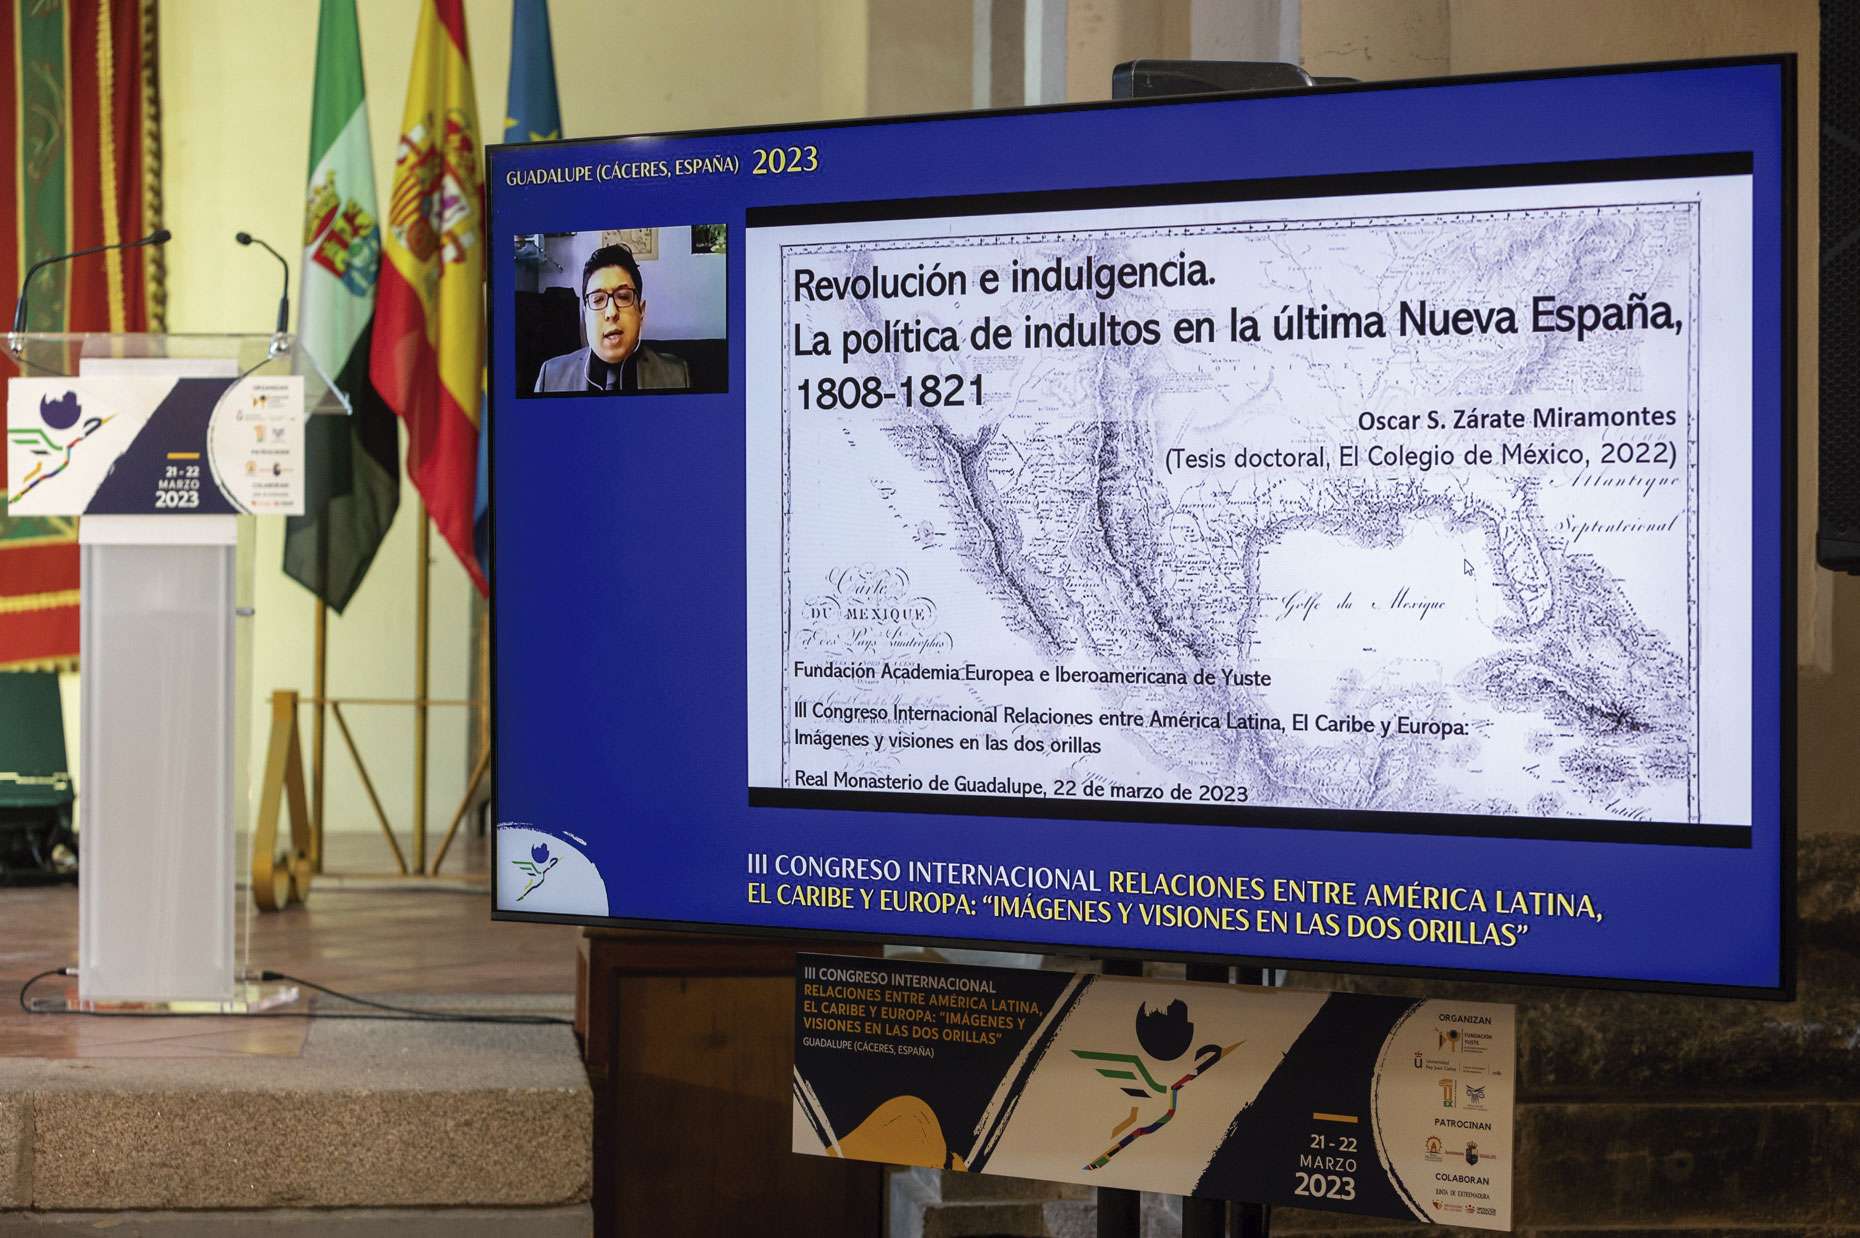 El VII Premio de investigación a tesis doctorales iberoamericanas recae en el investigador mexicano Óscar Sergio Zárate Miramontes. Grada 177. Fundación Yuste